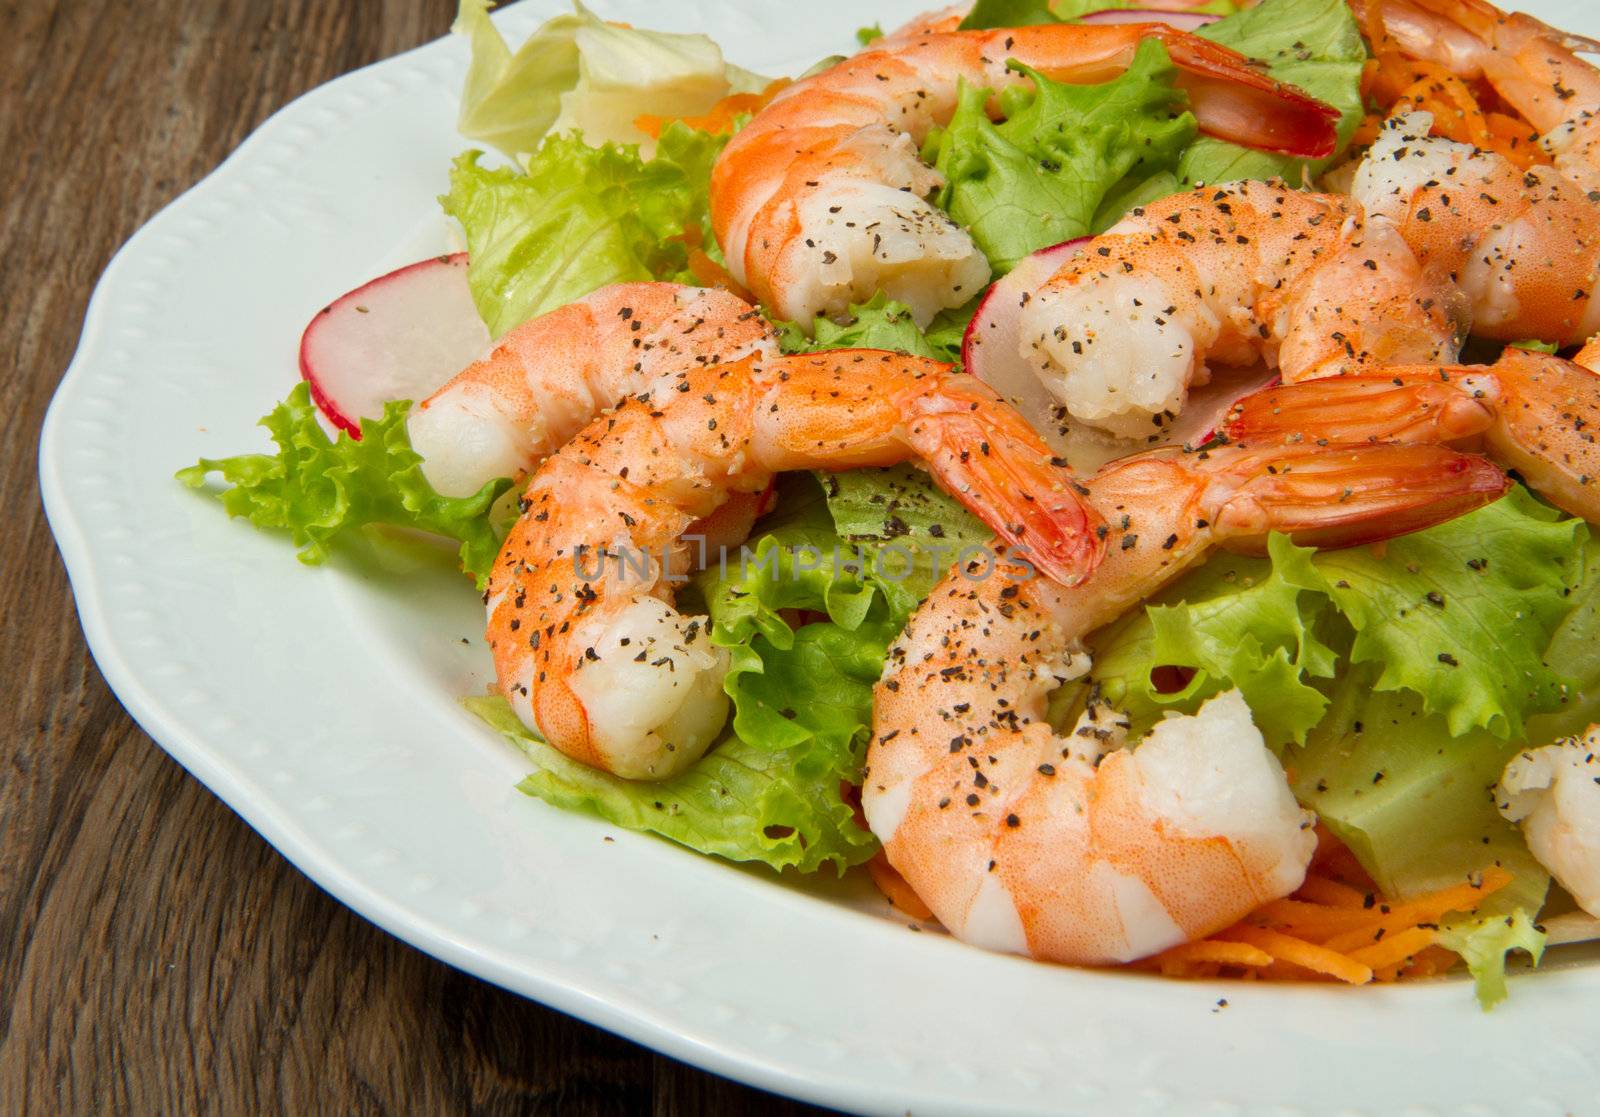 salad of shrimp, mixed greens